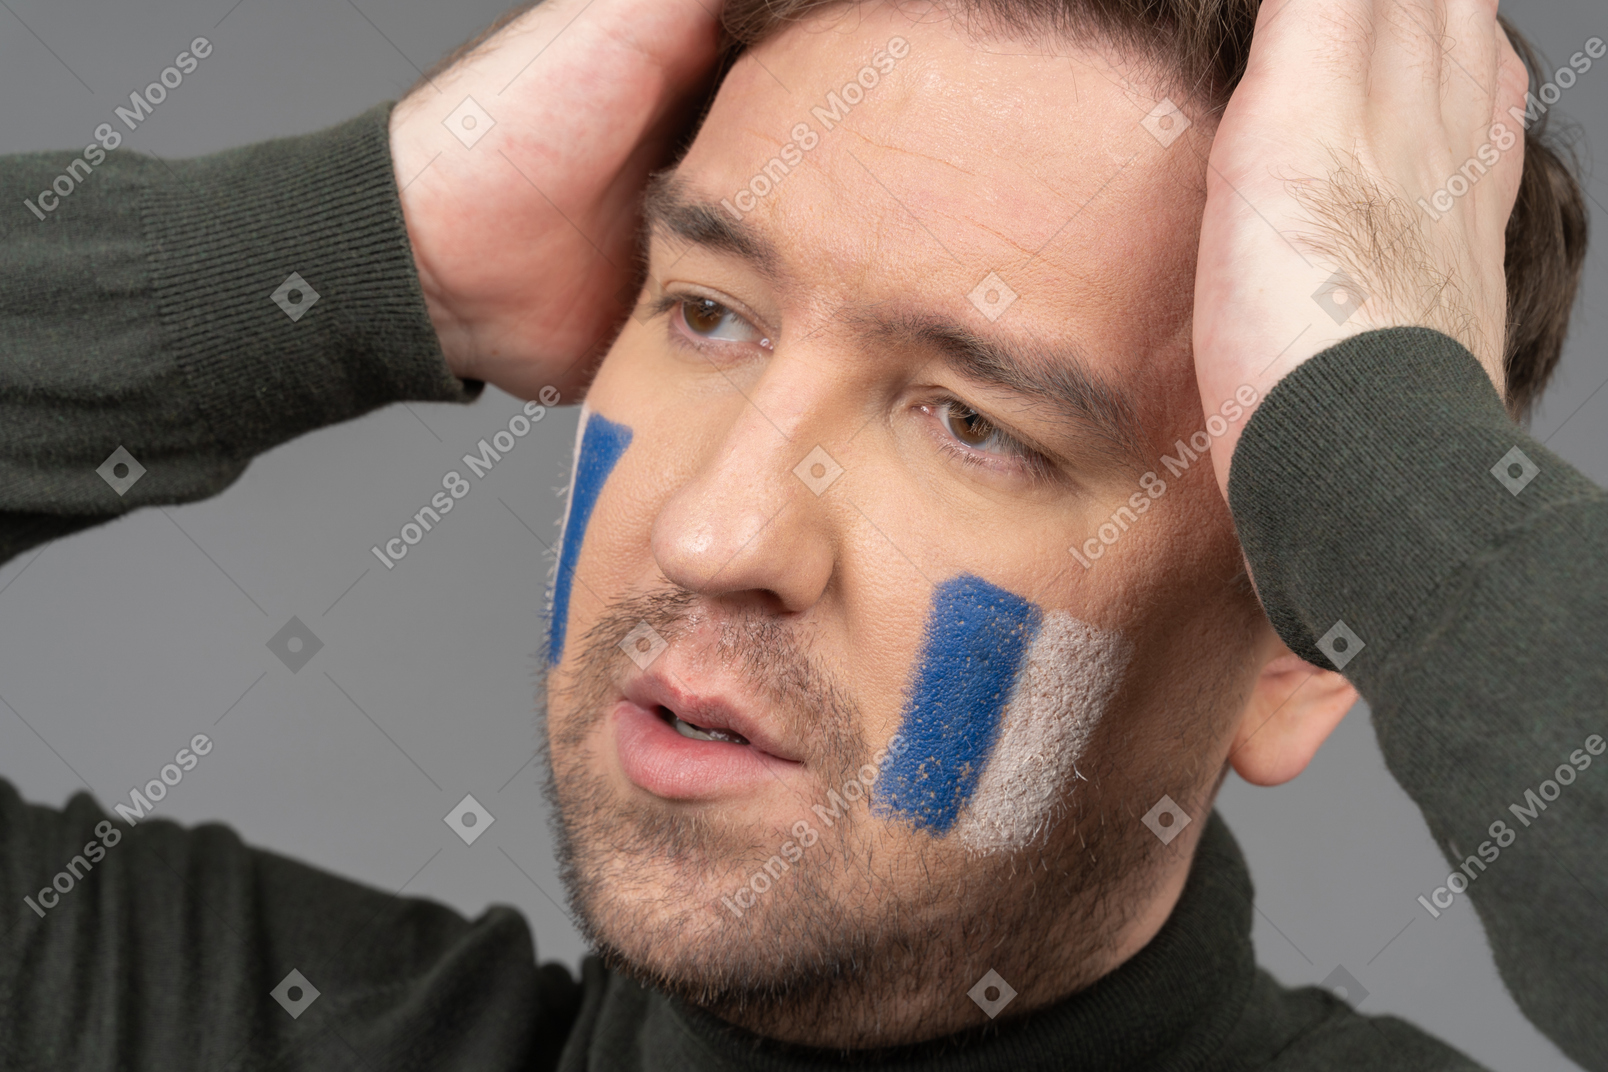 파란색 및 흰색 얼굴 아트가 손을 올리는 축구 팬의 초상화